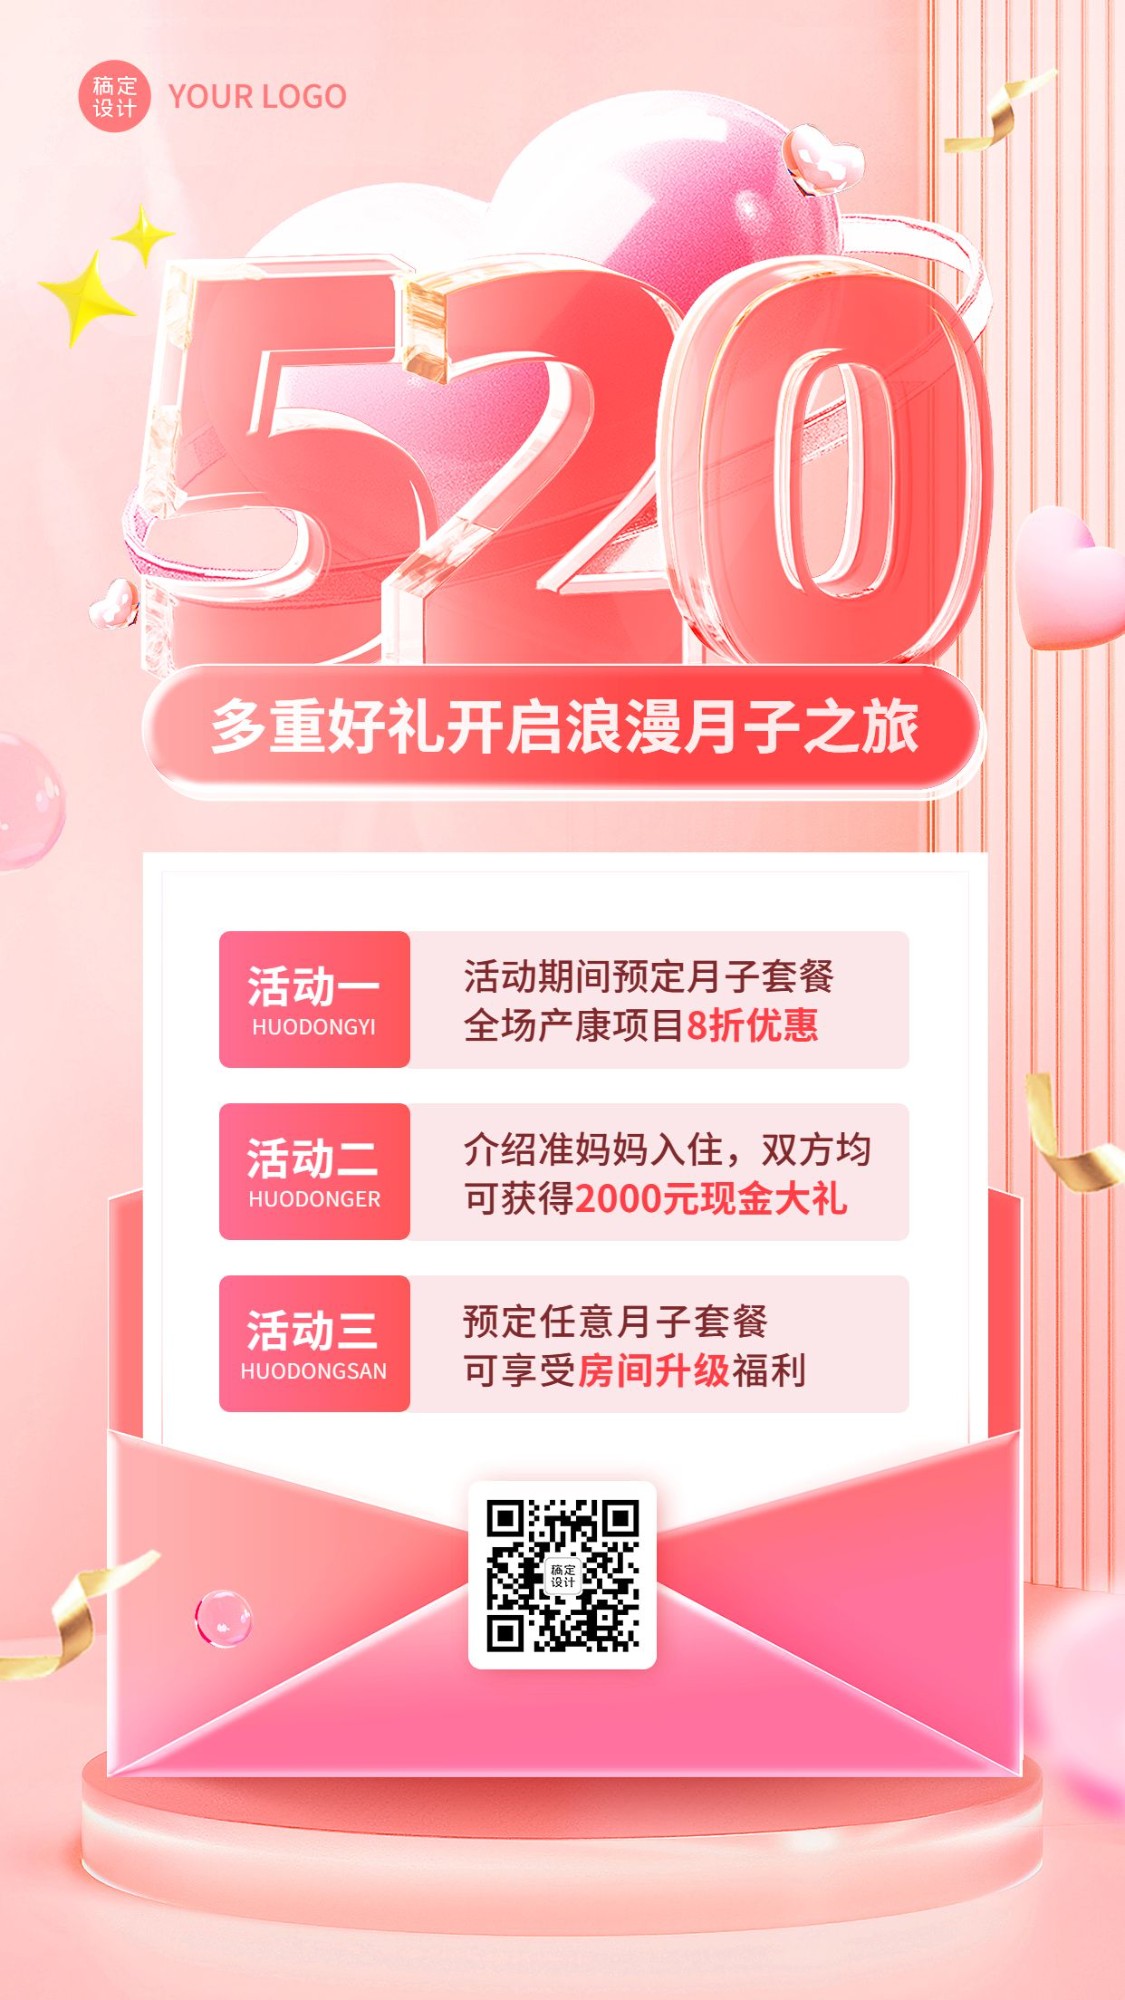 520情人节月子中心节日营销手机海报